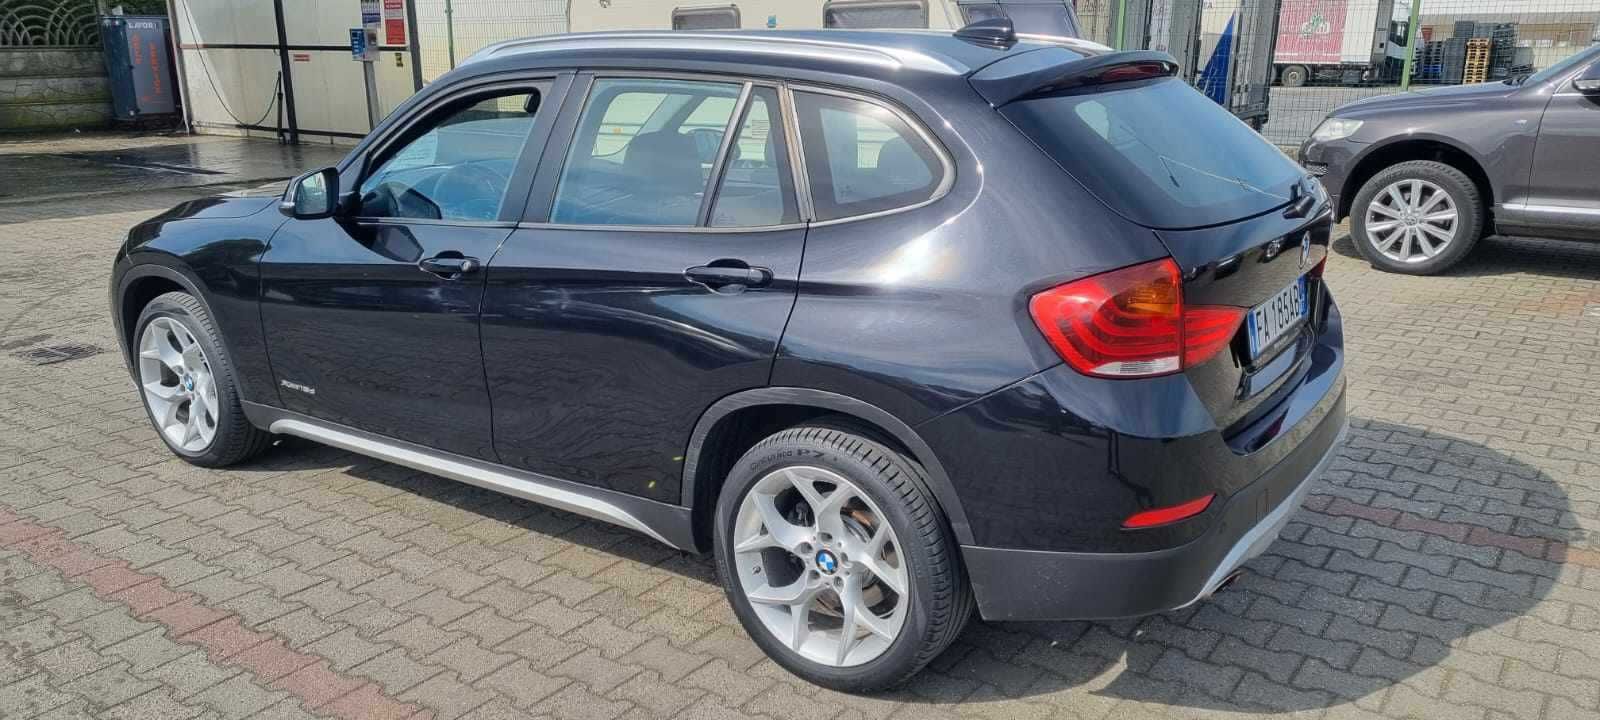 BMW X1 2.0 Diesel 140 Cp 2015 Euro 5 4x4